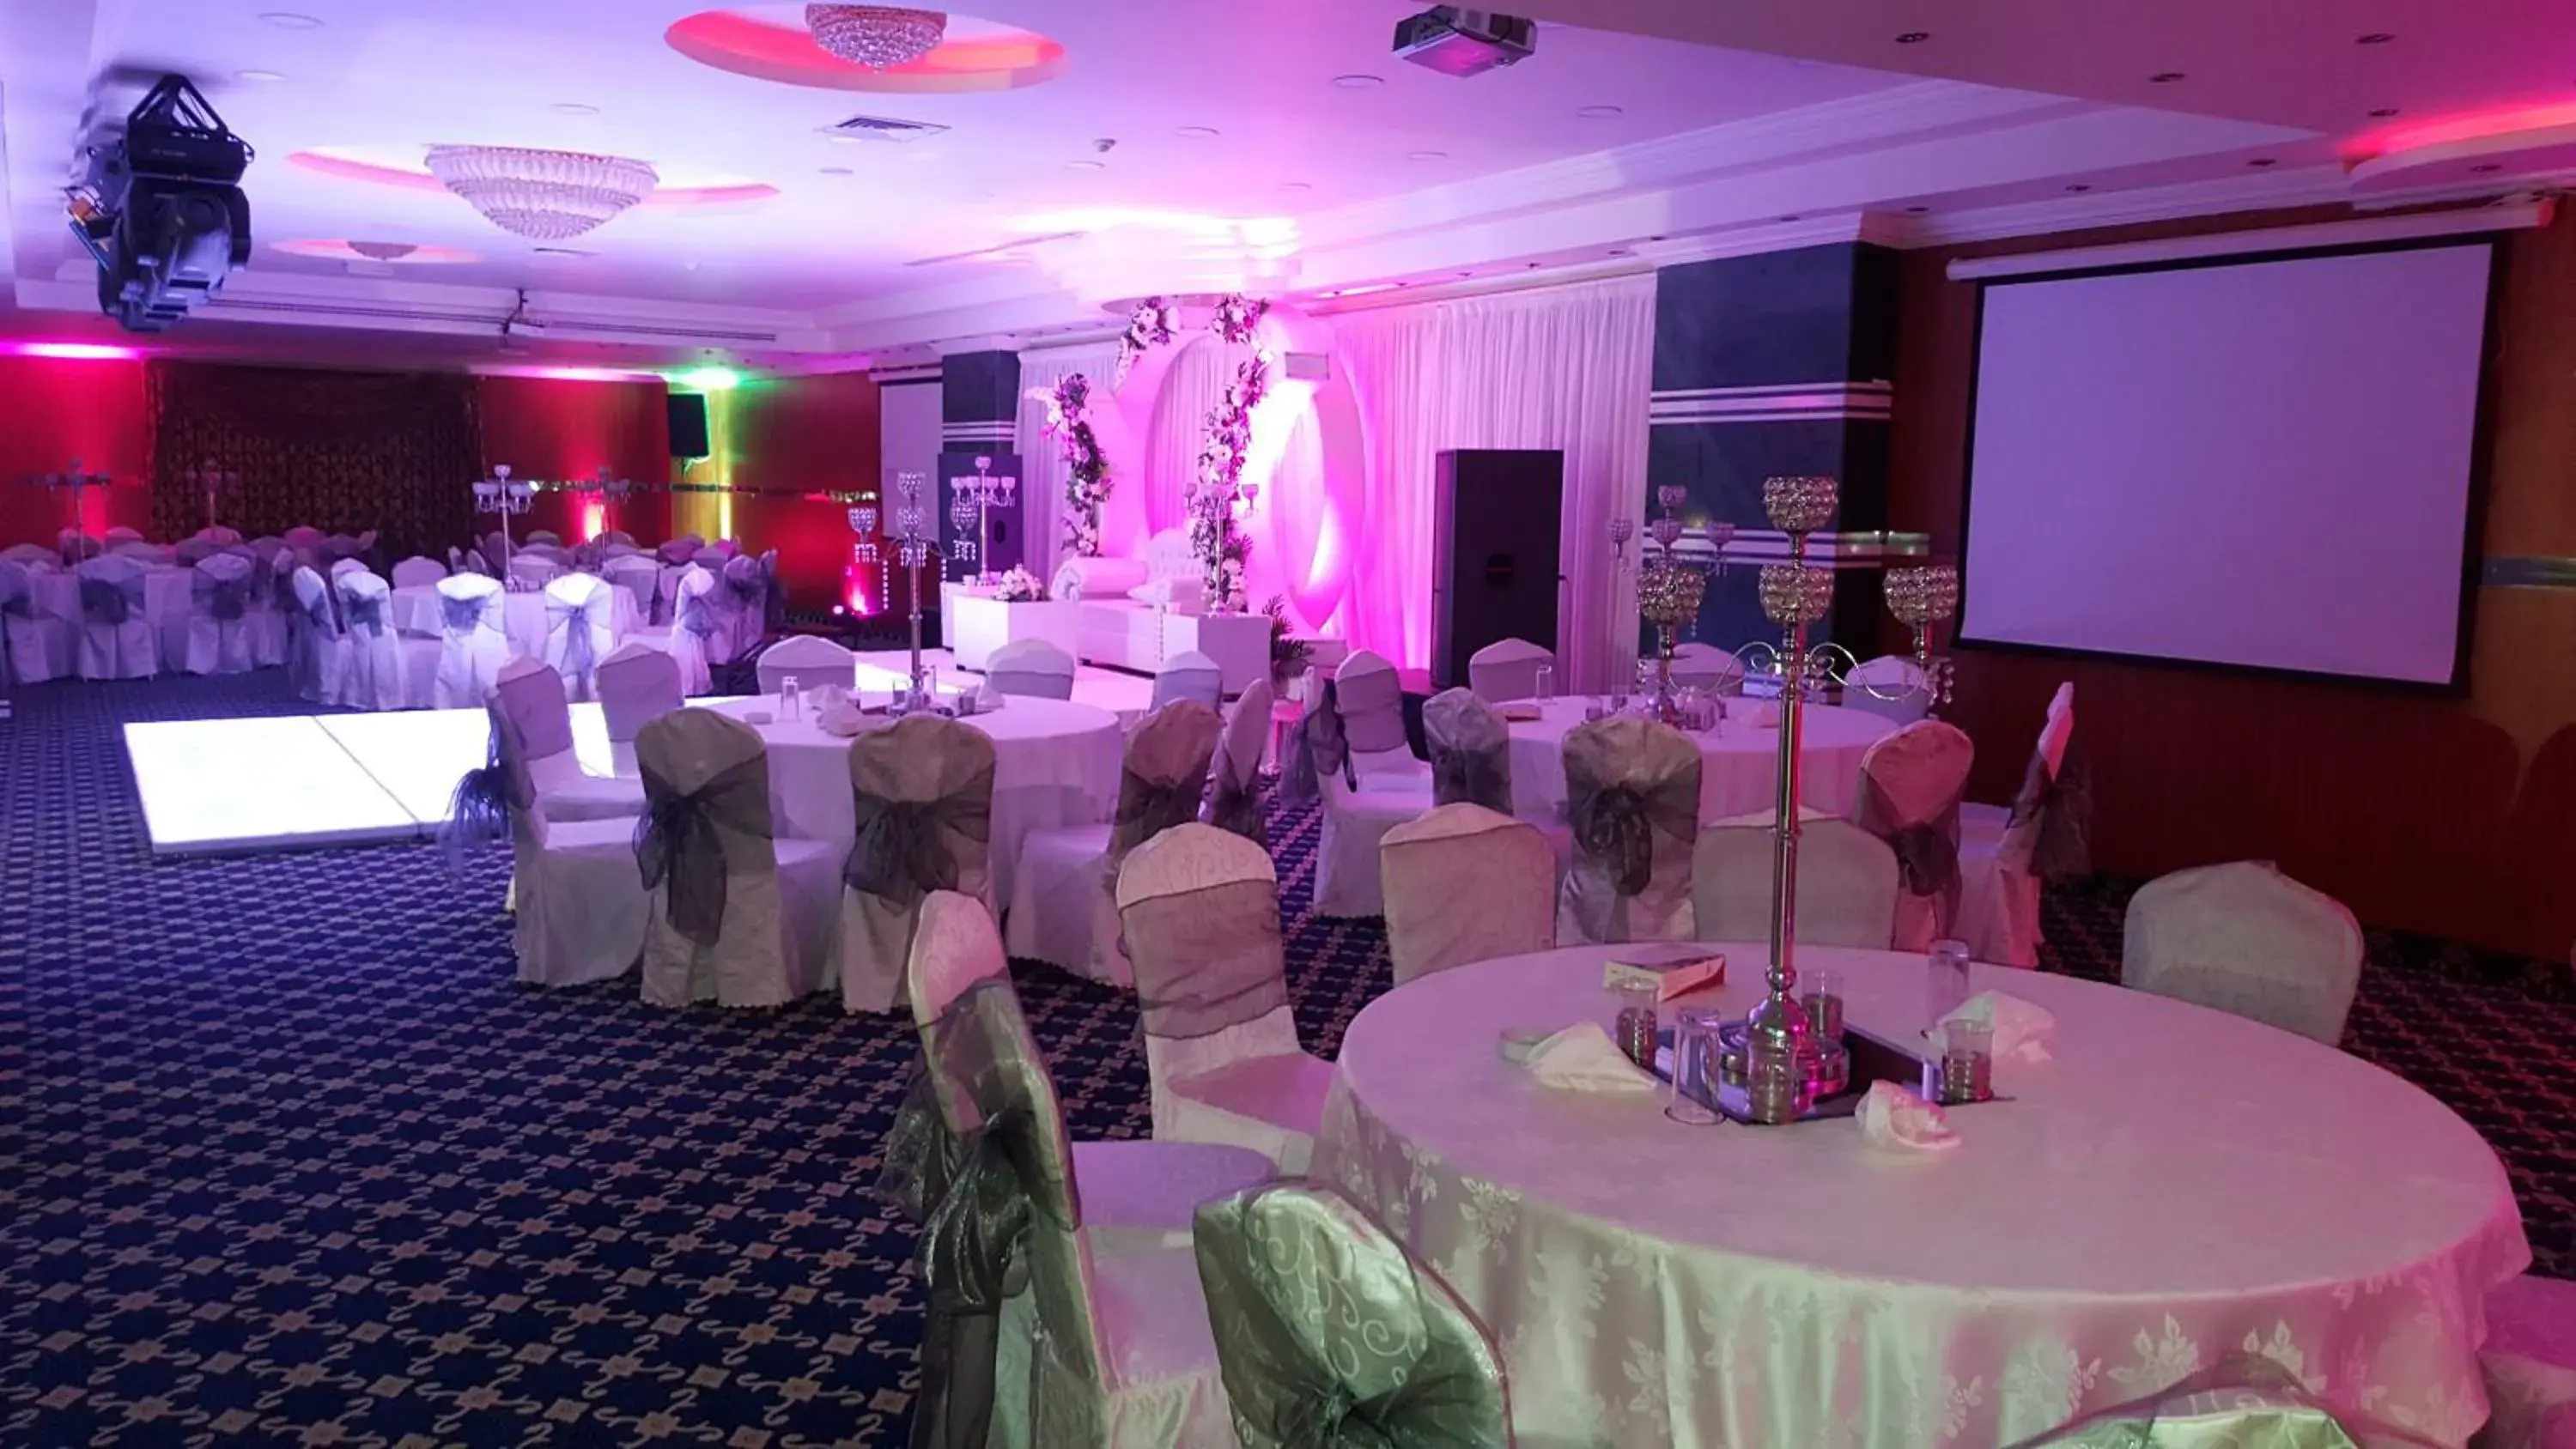 Banquet/Function facilities, Banquet Facilities in Al Thuraya Hotel